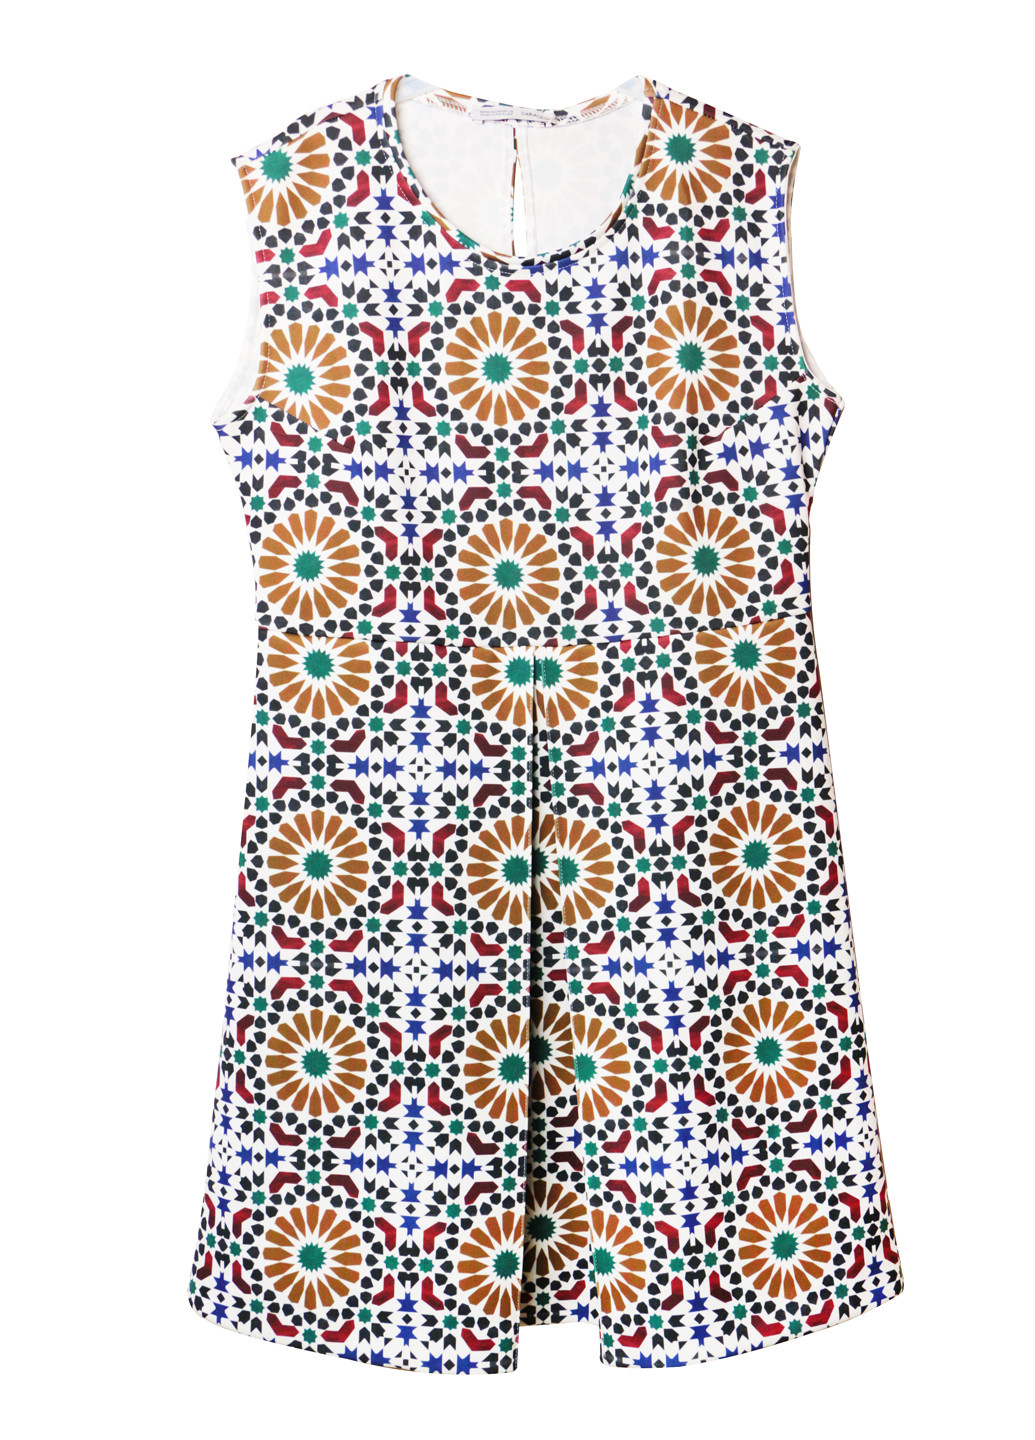 Комбинированное платье расклешенного силуэта m 44/46 разноцветный Zara